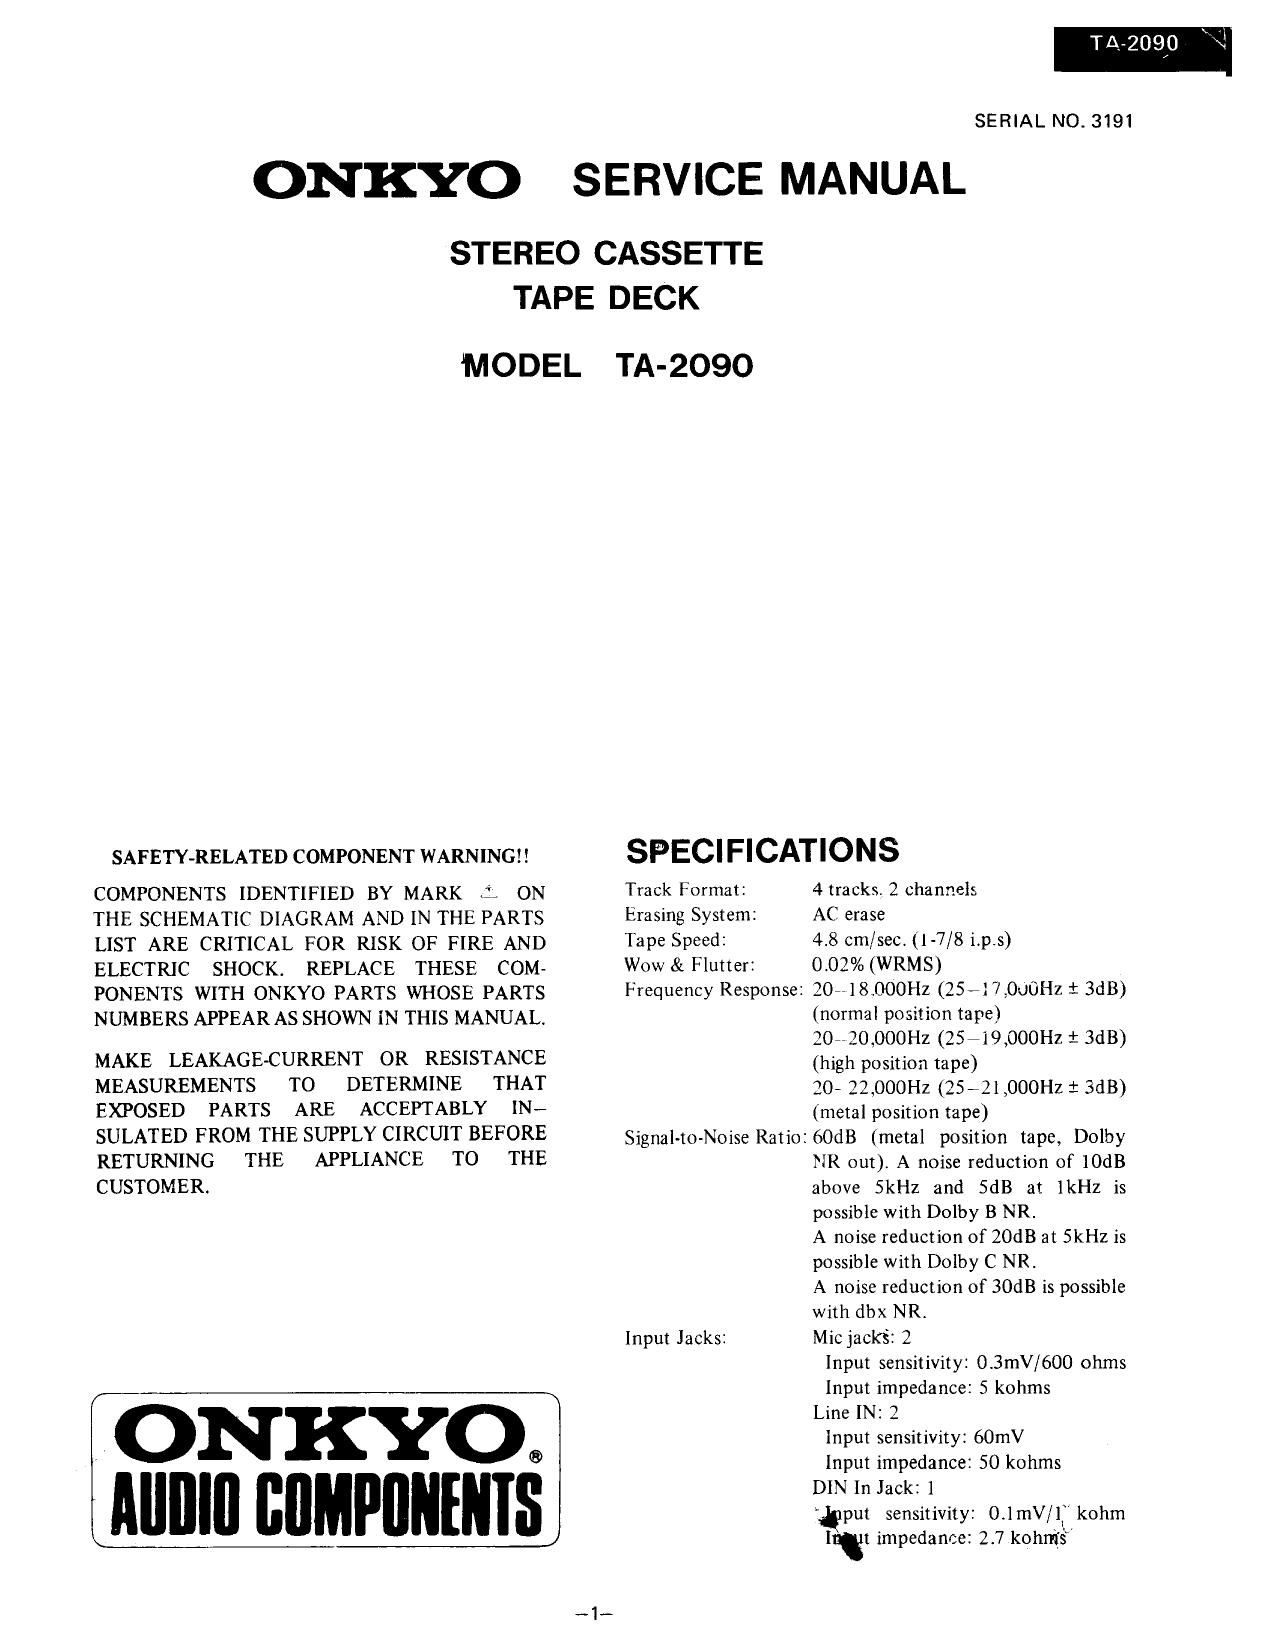 Onkyo TA 2090 Service Manual